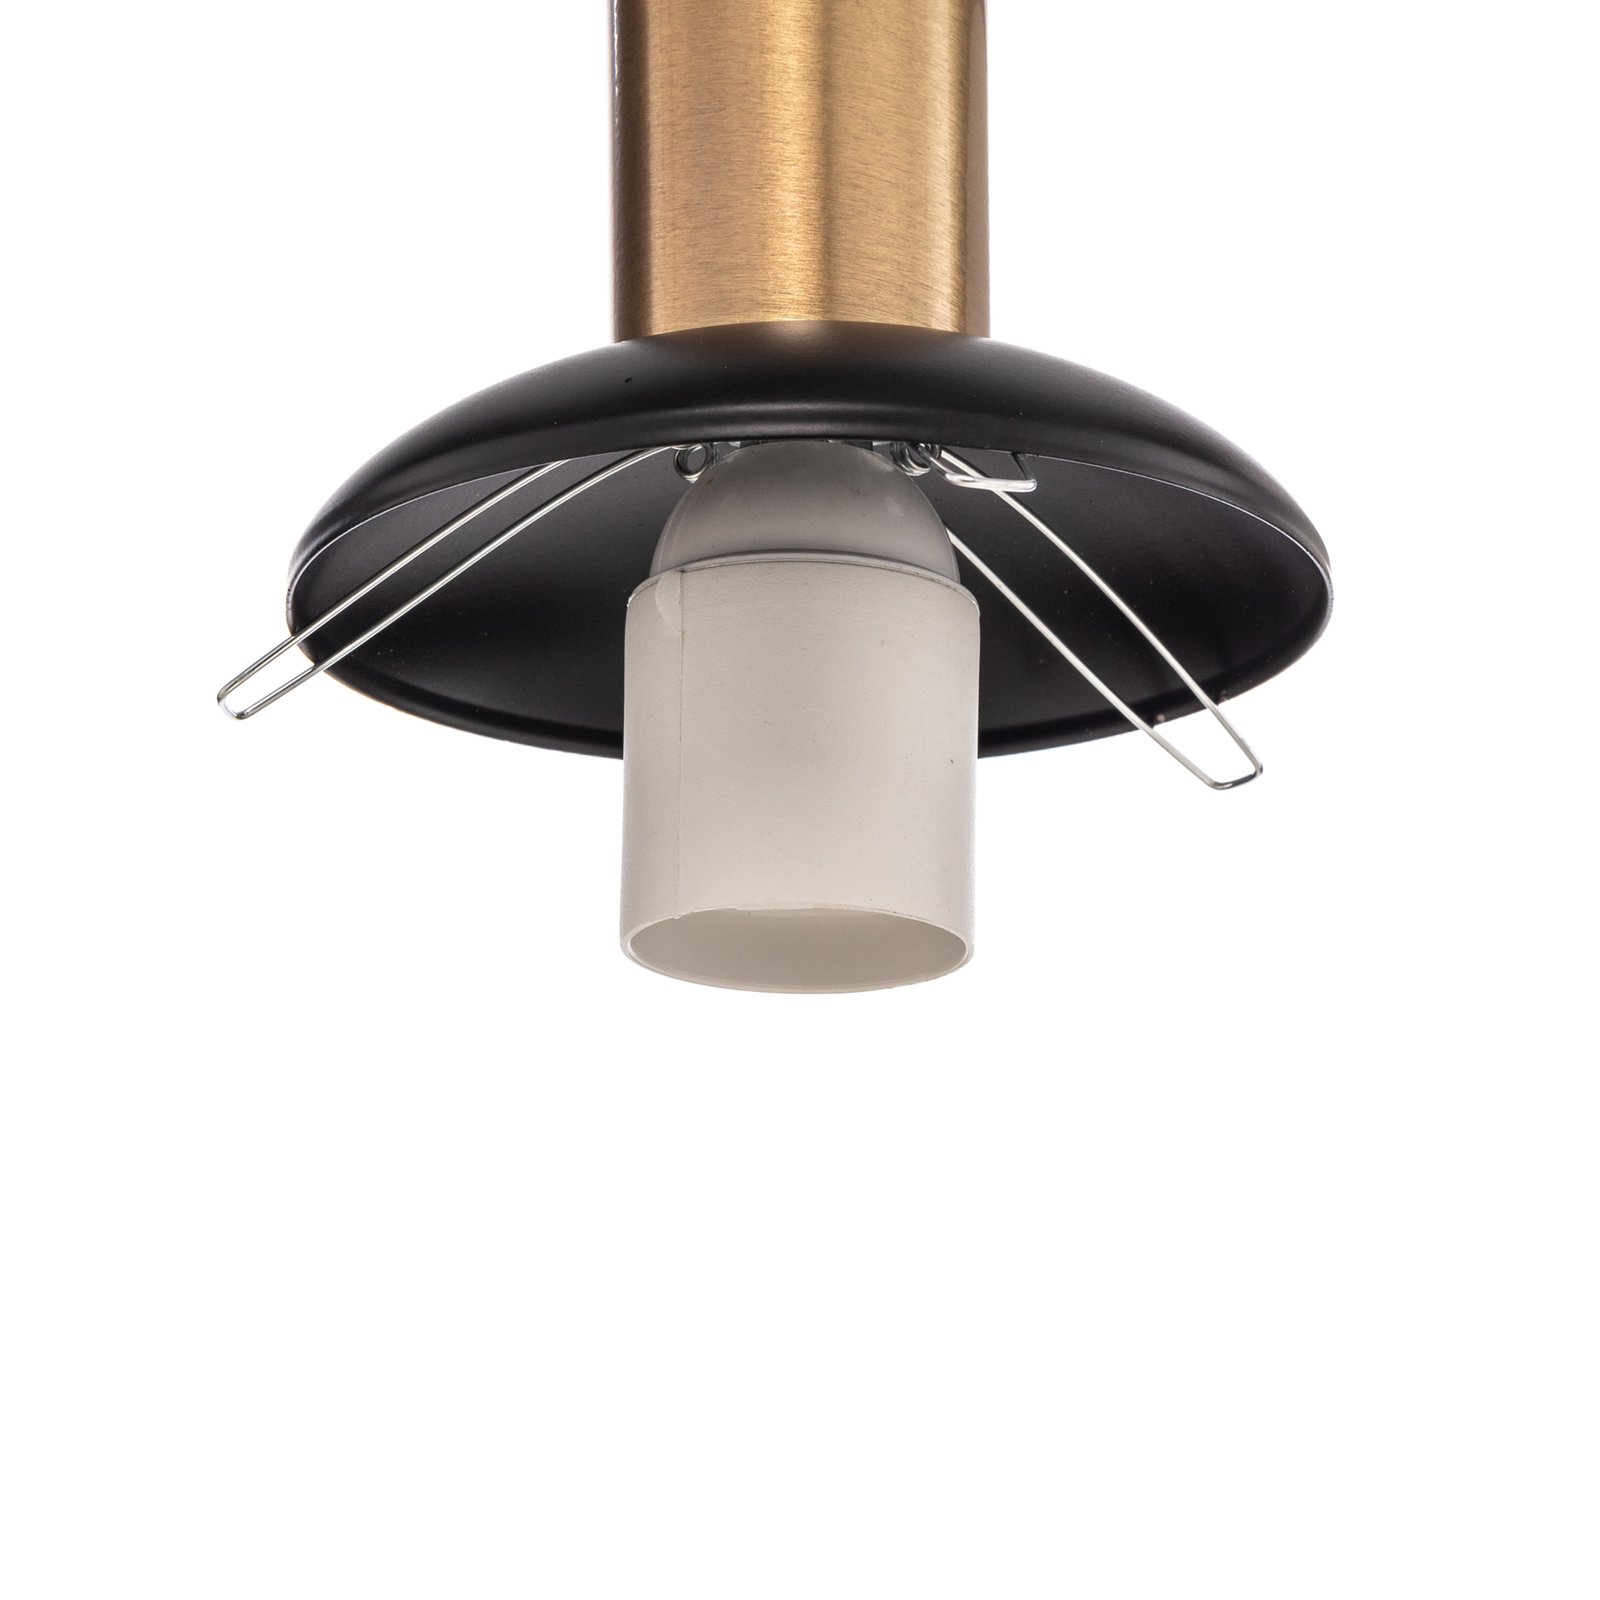 Hanglamp AV-1838-4Y-BSY balken, 4-lamps